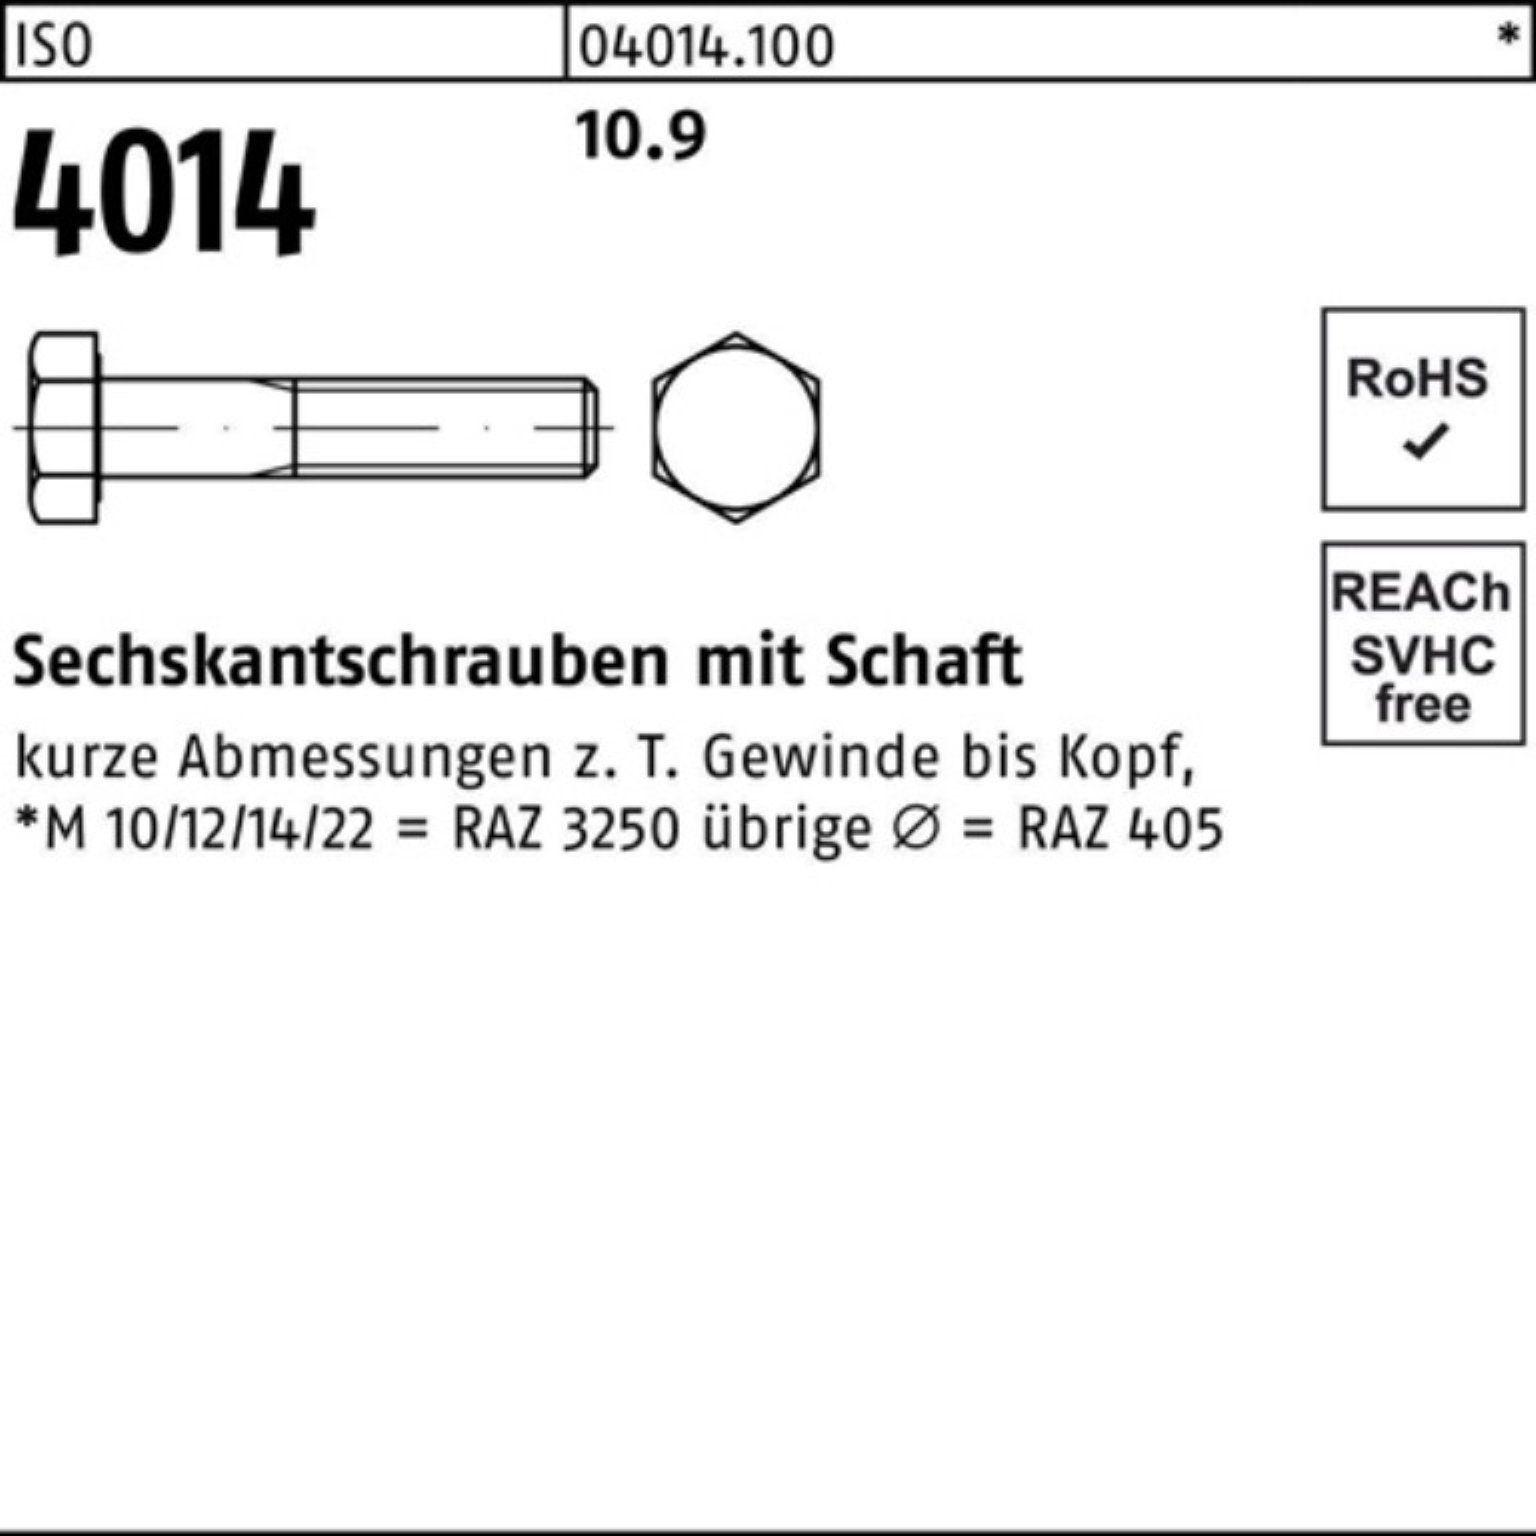 Bufab Sechskantschraube Pack Stück I 10 100er ISO 120 10.9 Sechskantschraube Schaft M27x 4014